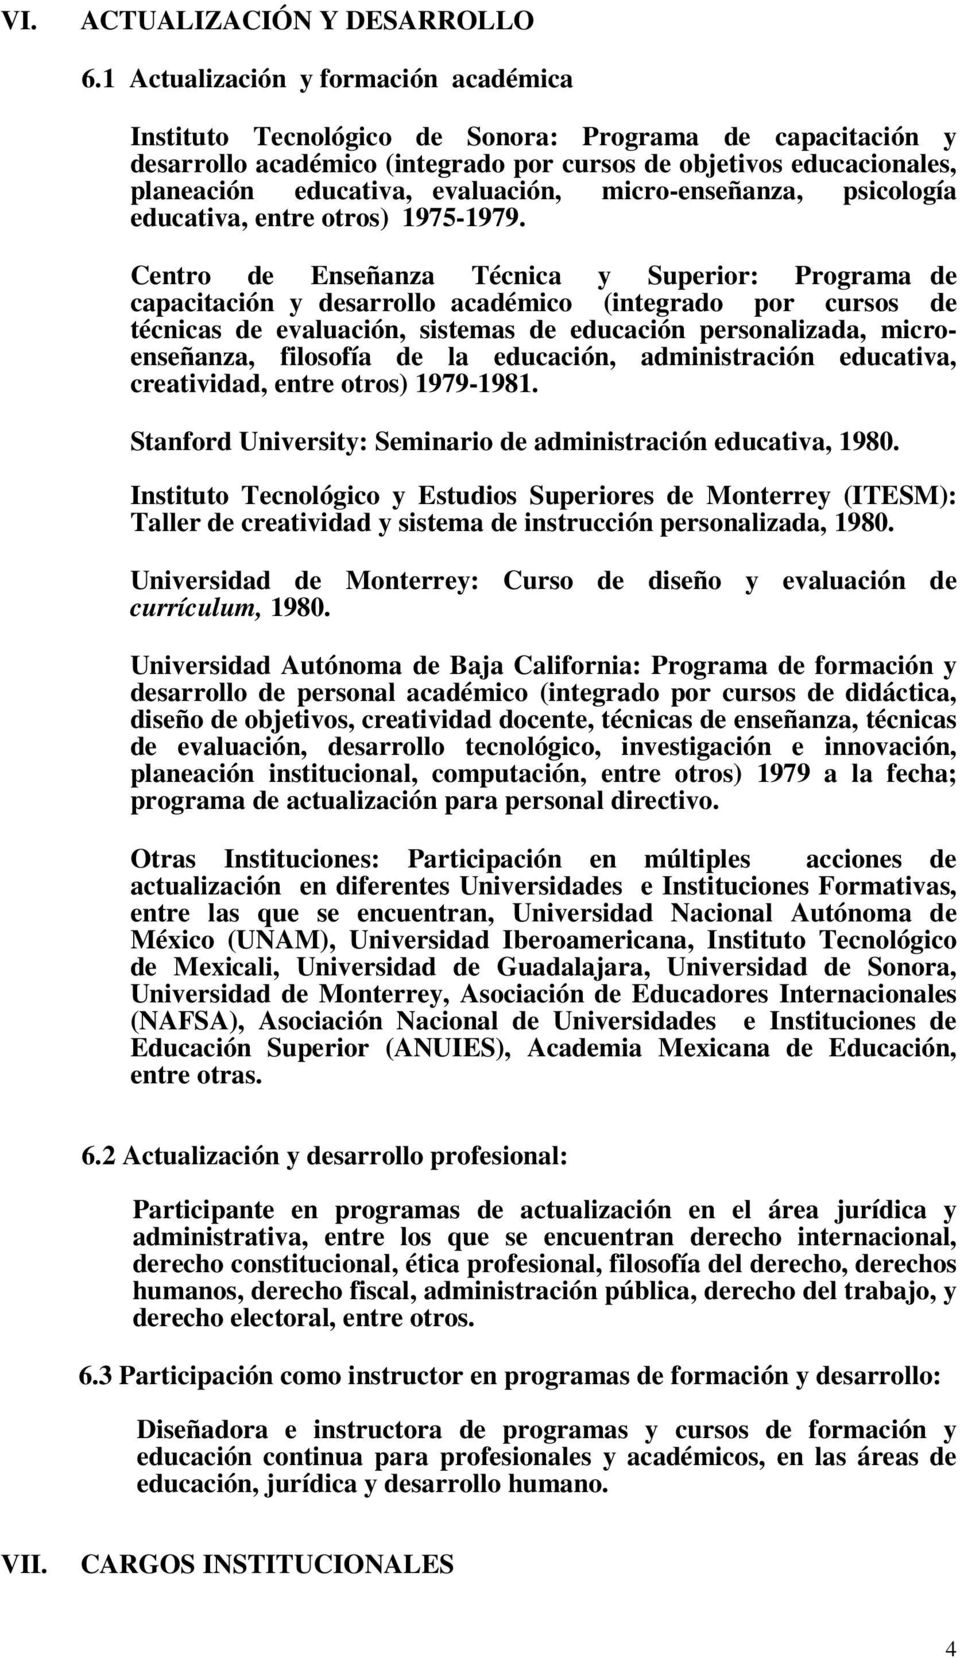 evaluación, micro-enseñanza, psicología educativa, entre otros) 1975-1979.